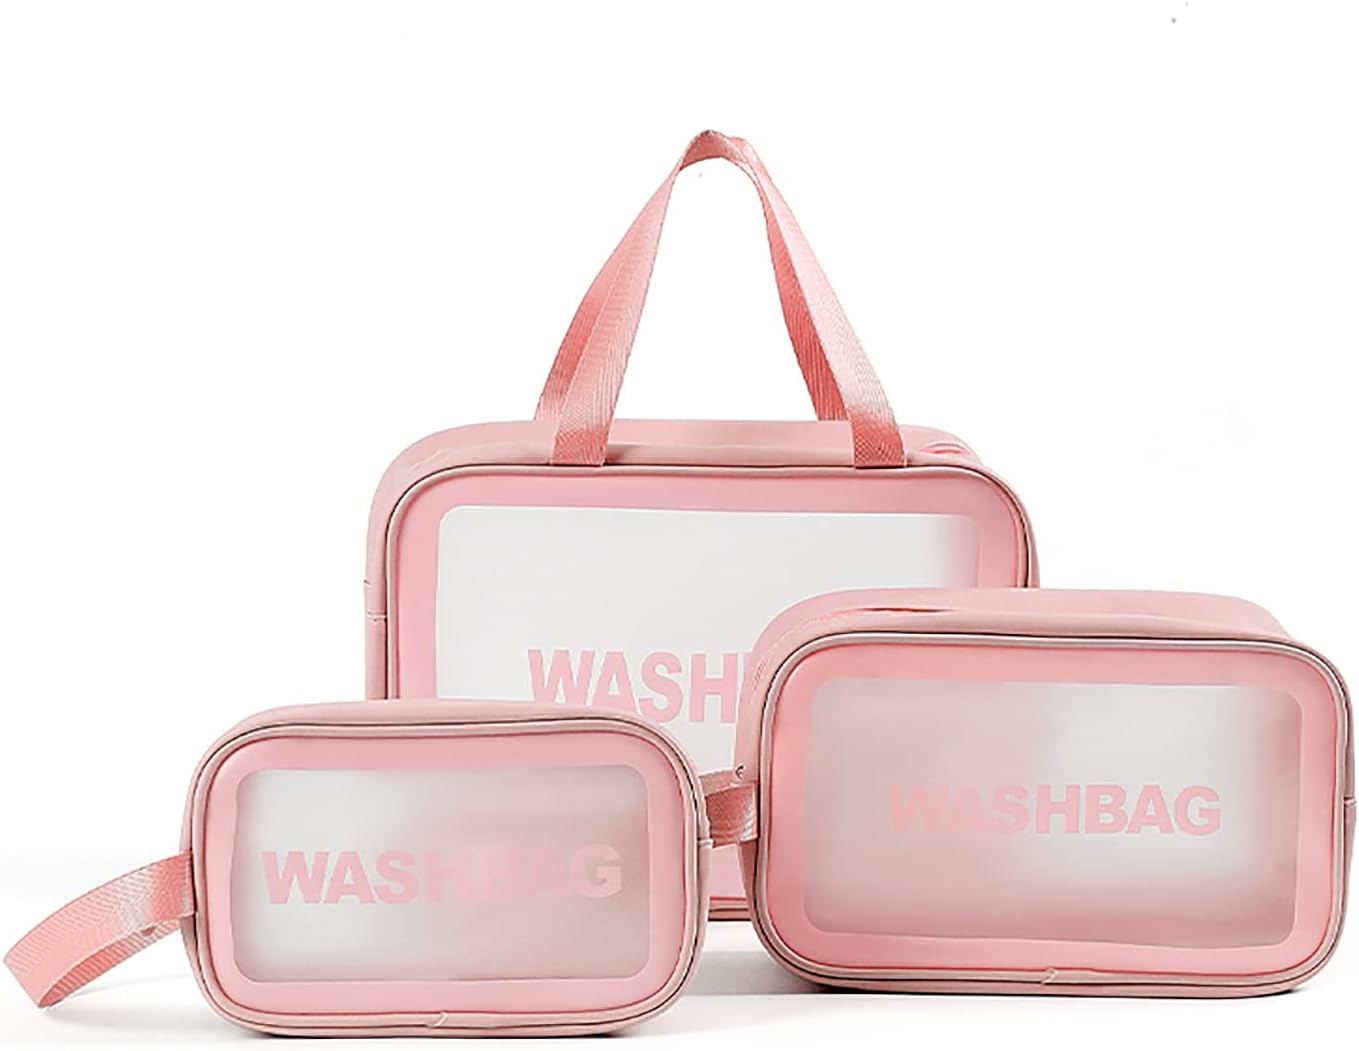 کیف لوازم آرایشی ضد آب و مسافرتی ( واش بگ )